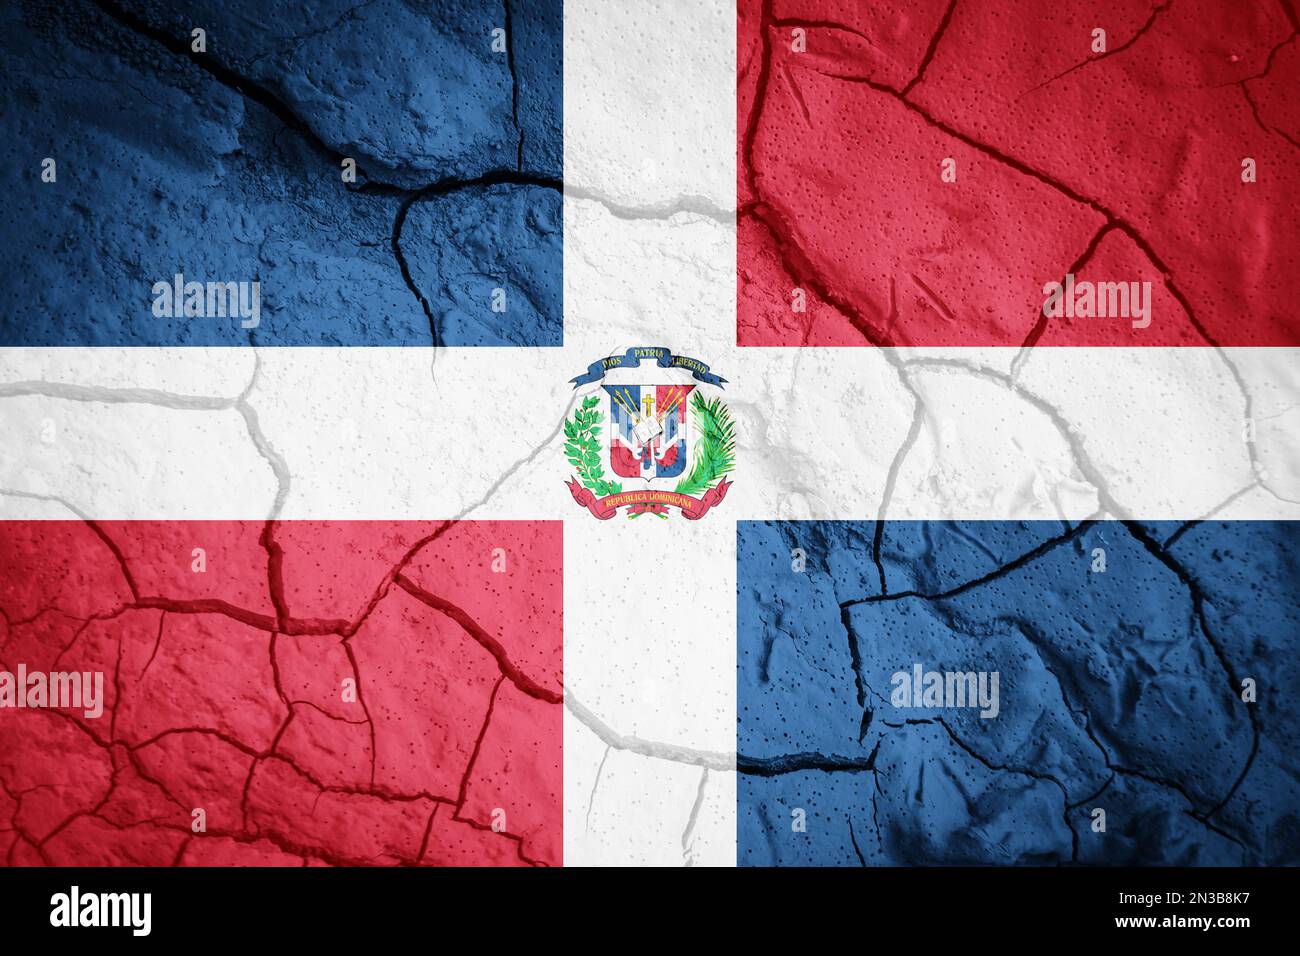 Flagge der Dominikanischen Republik. Symbol für die Dominikanische Republik. Flagge auf dem Hintergrund von trockener, gerissener Erde. Flagge der Dominikanischen Republik mit Dürrekonzept Stockfoto